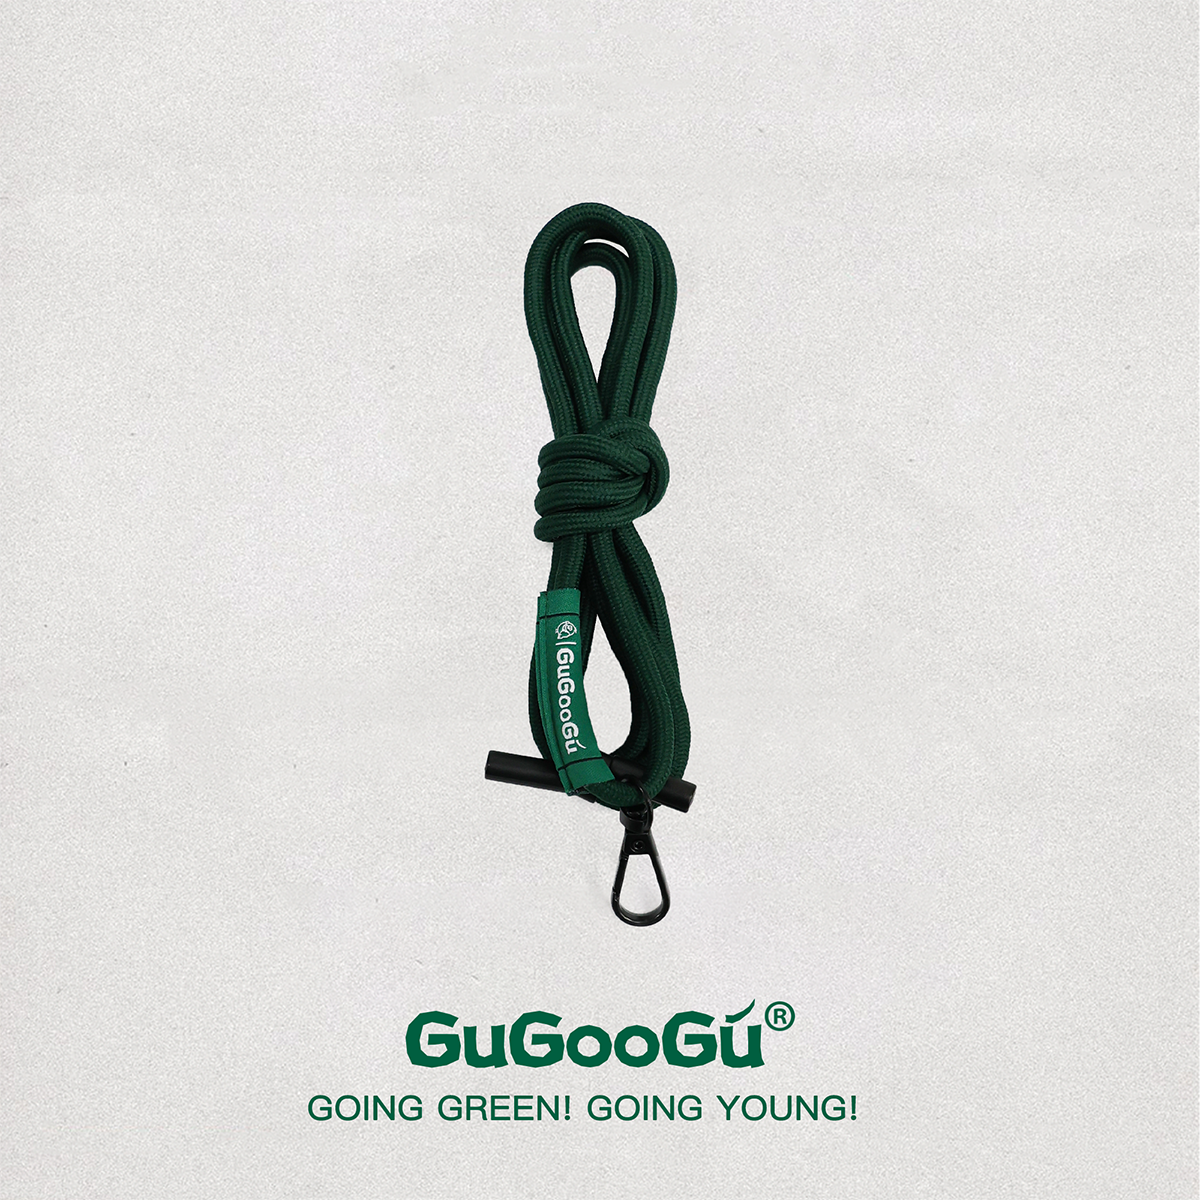 這是GUGOOGU的多功能手機繩，選用了品牌綠的顏色。